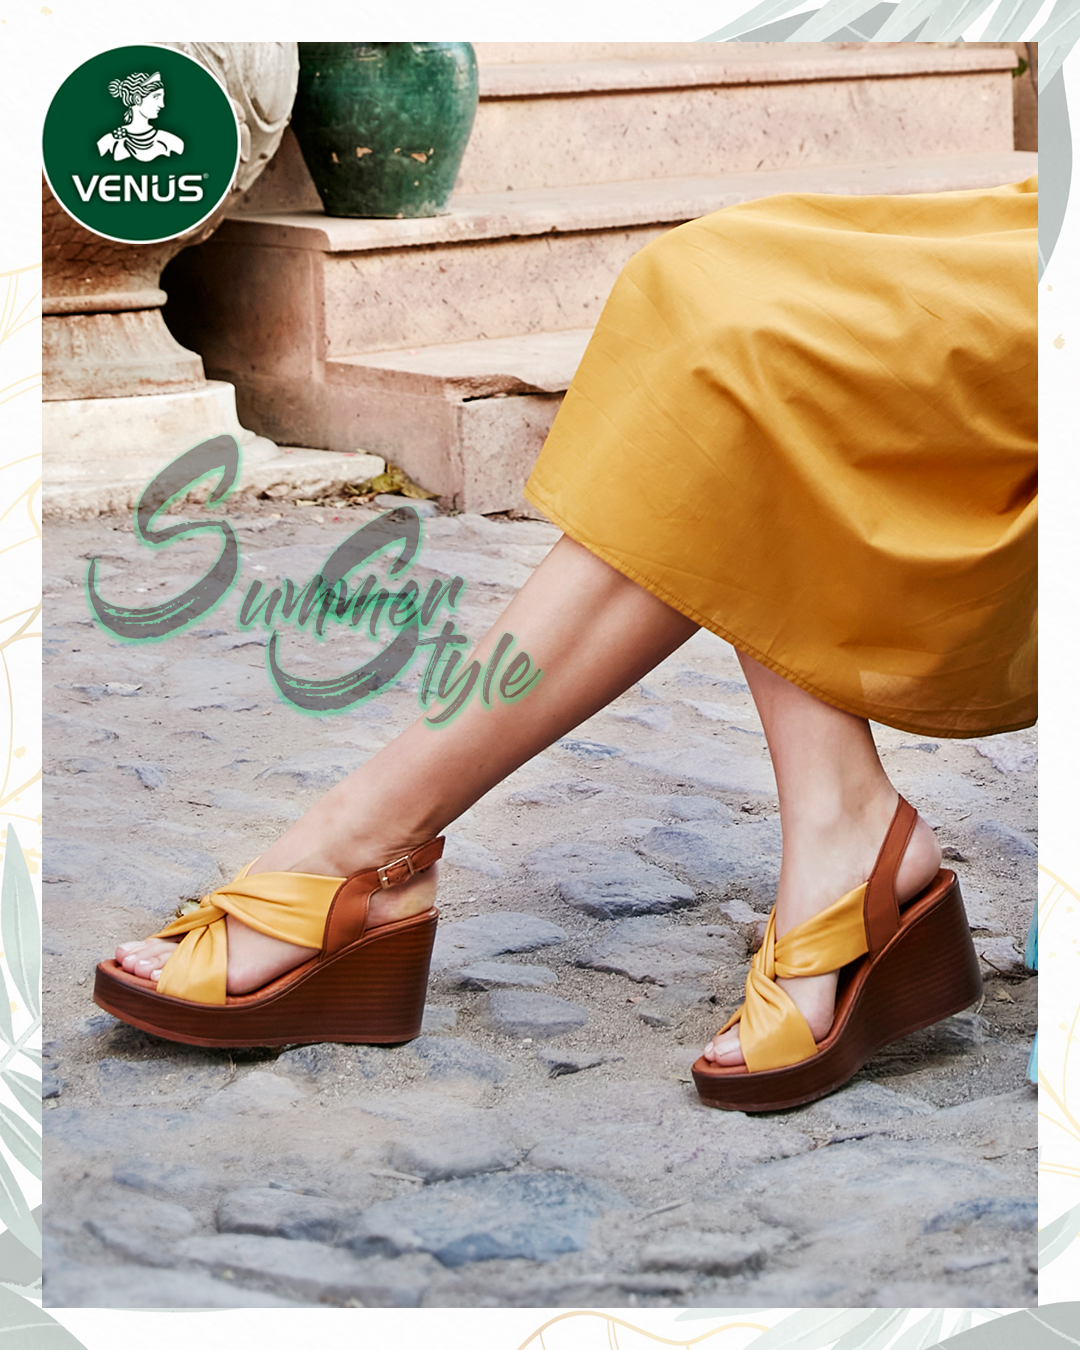 Kadın Dolgu Topuk Deri Sandalet Sarı 2310803Y